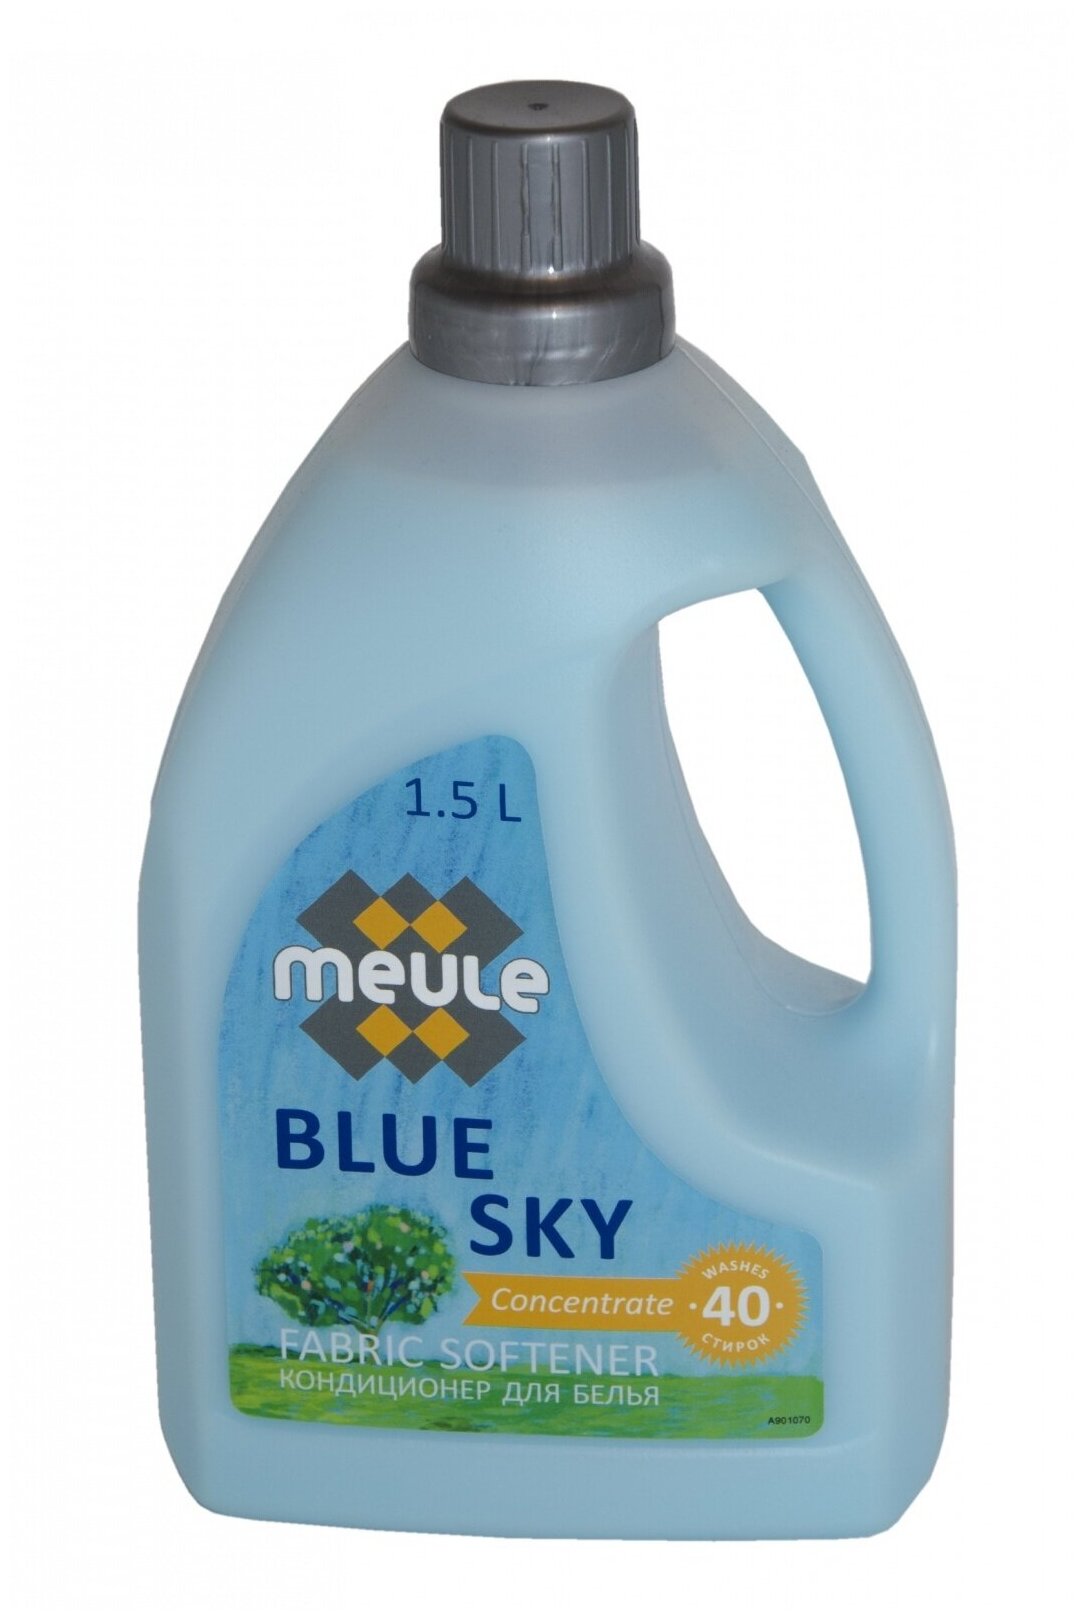 Кондиционер для белья Meule Blue Sky Softeher Голубое небо концентрат 1,5 л